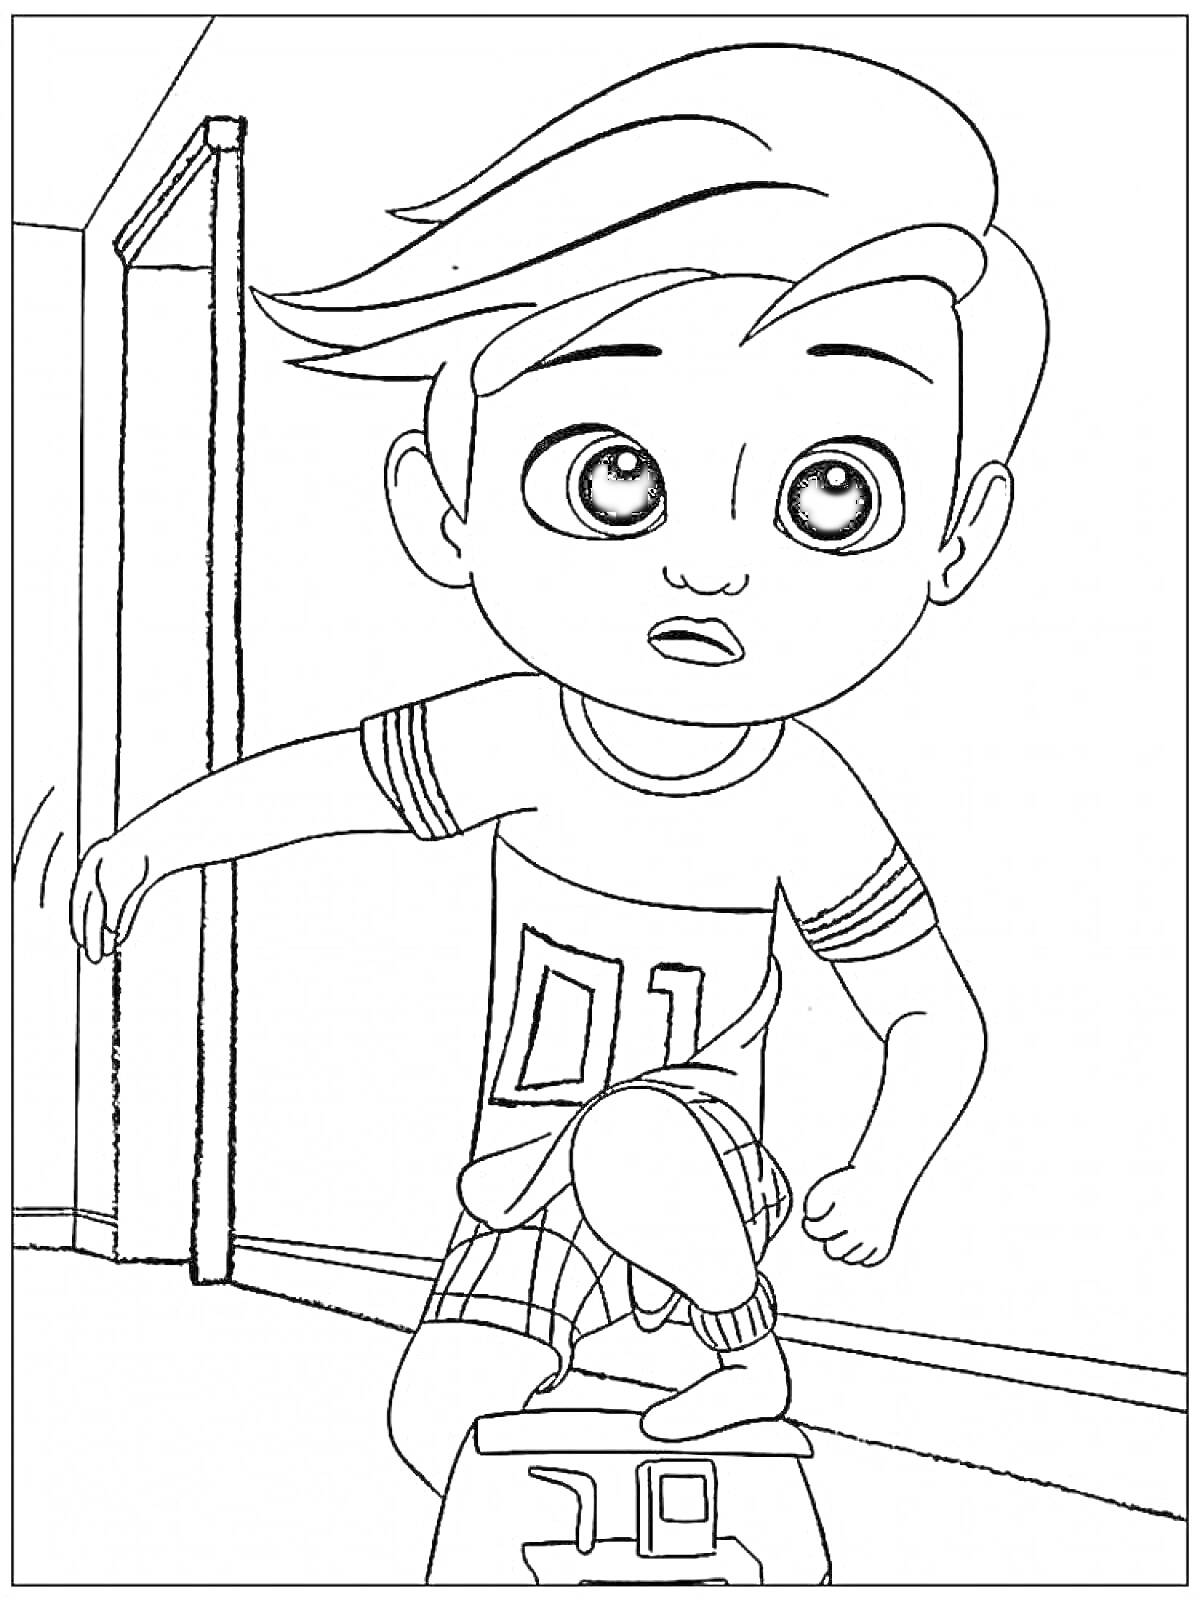 Мальчик с прической и футболкой с номером 01 прыгает через коробку у открытой двери